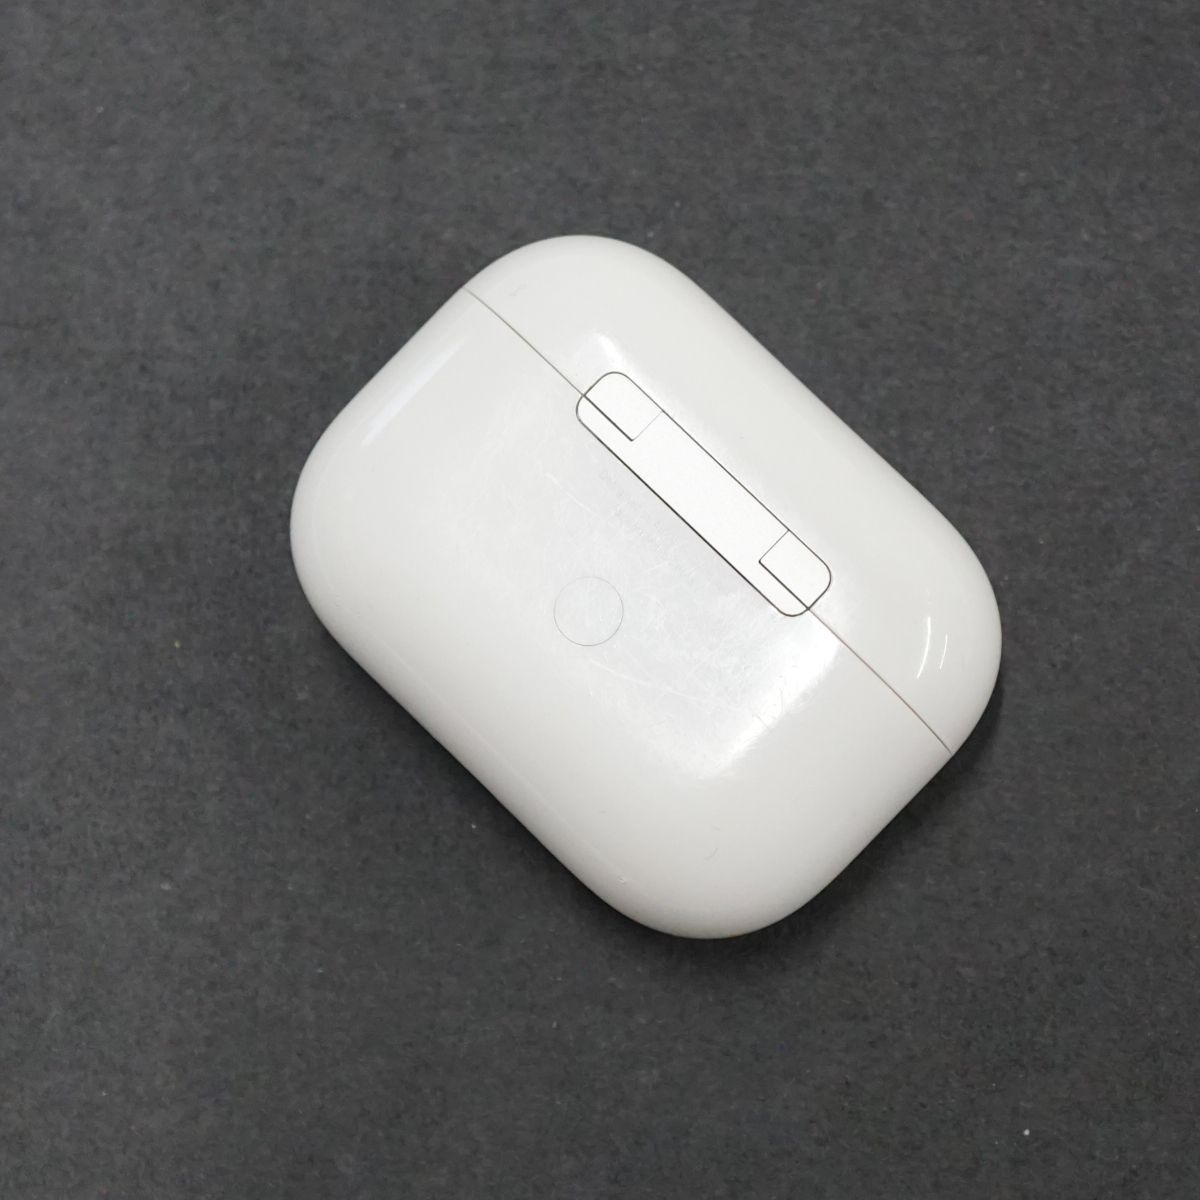 Apple AirPods Pro 充電ケースのみ USED美品 第一世代 イヤホン